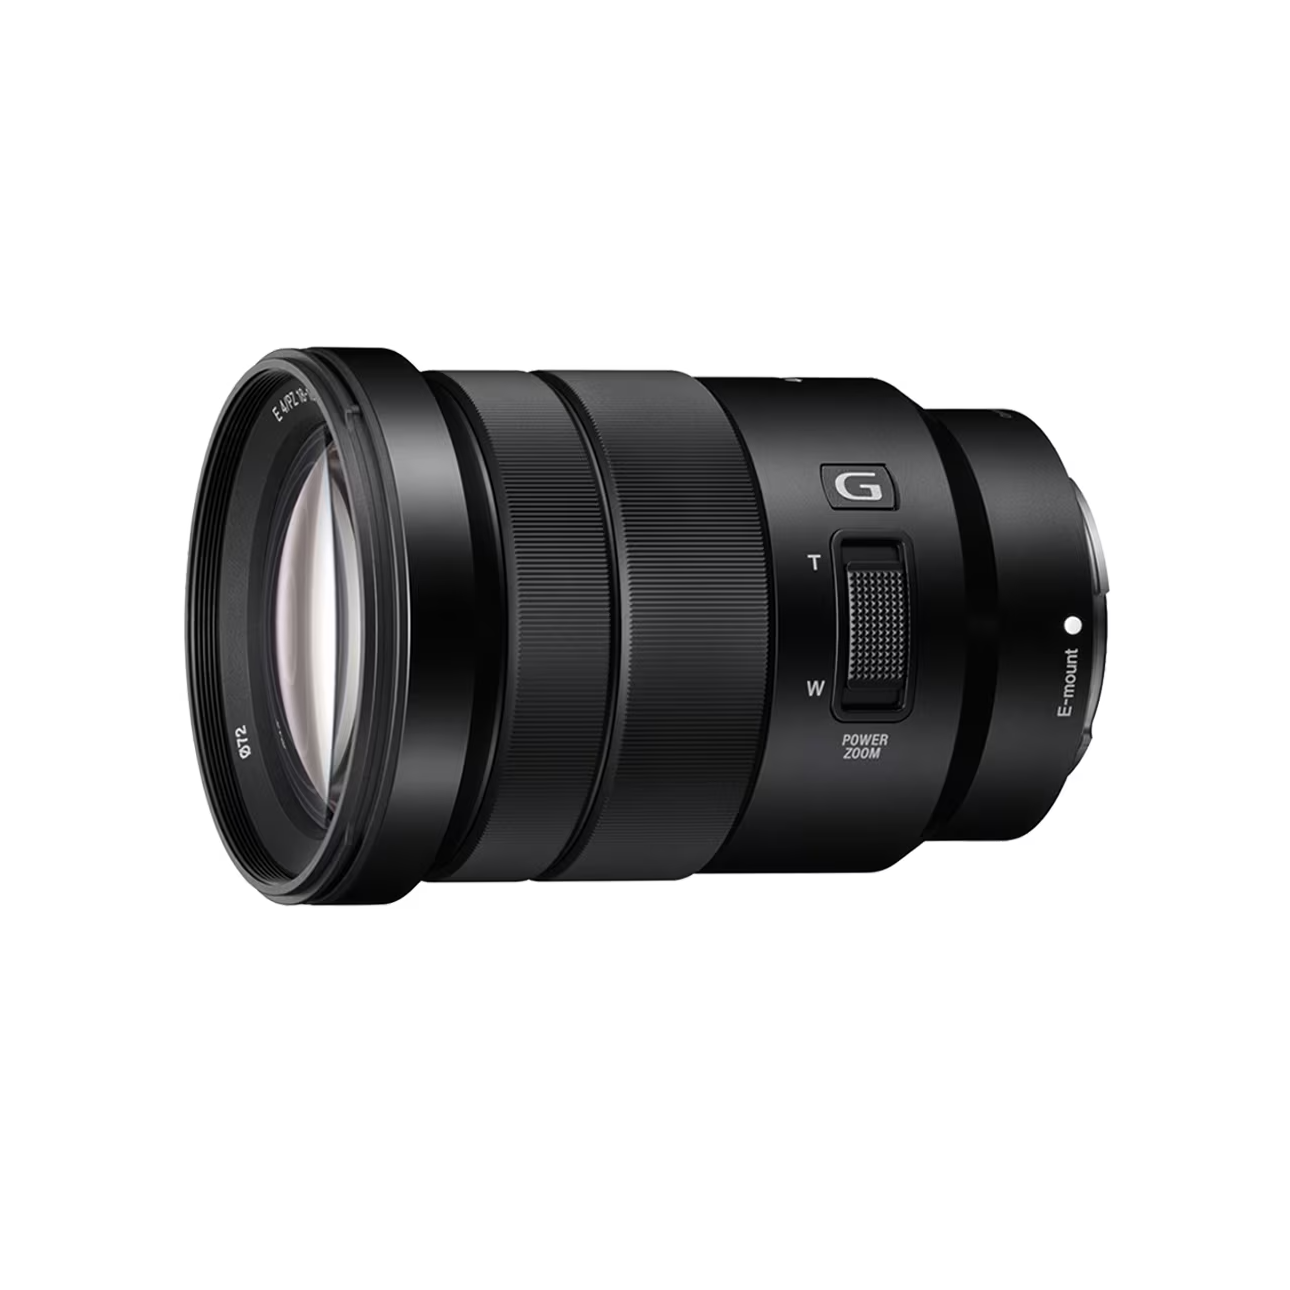 SELP18105G | Ống kính zoom FE PZ 18-105mm F4 G OSS